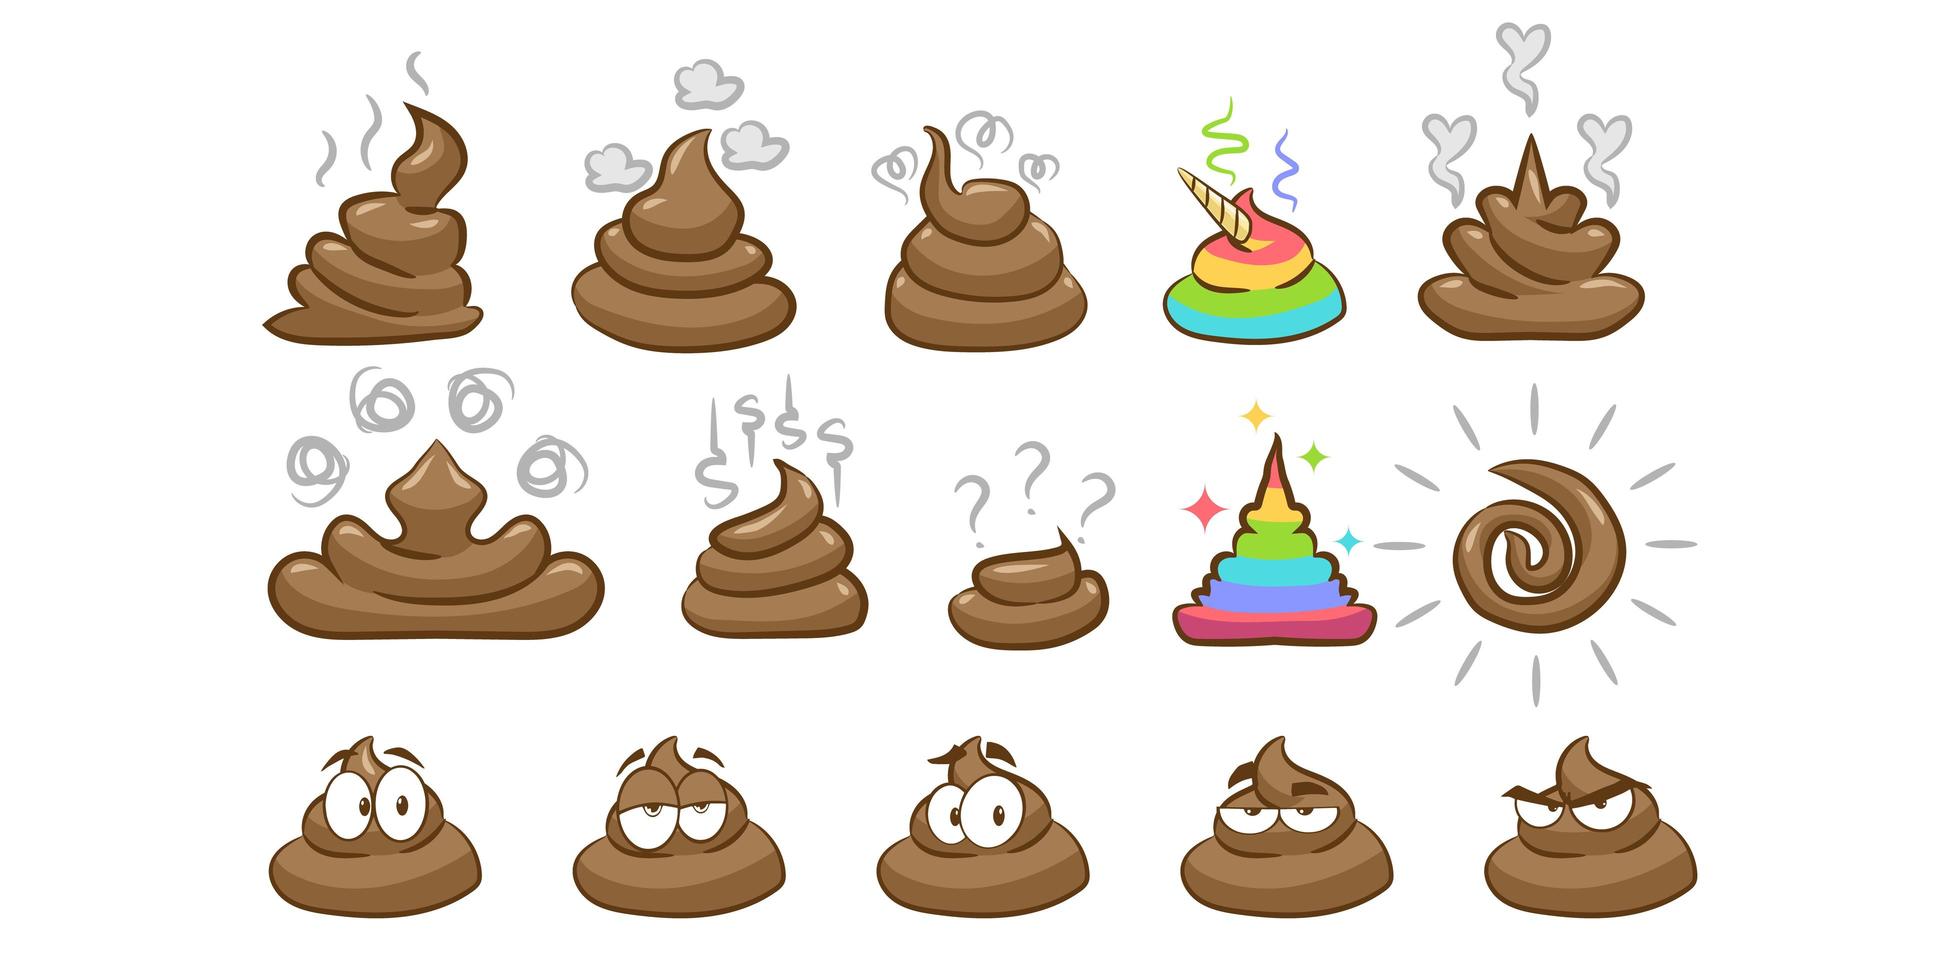 不同形状的poo emoji图片插图